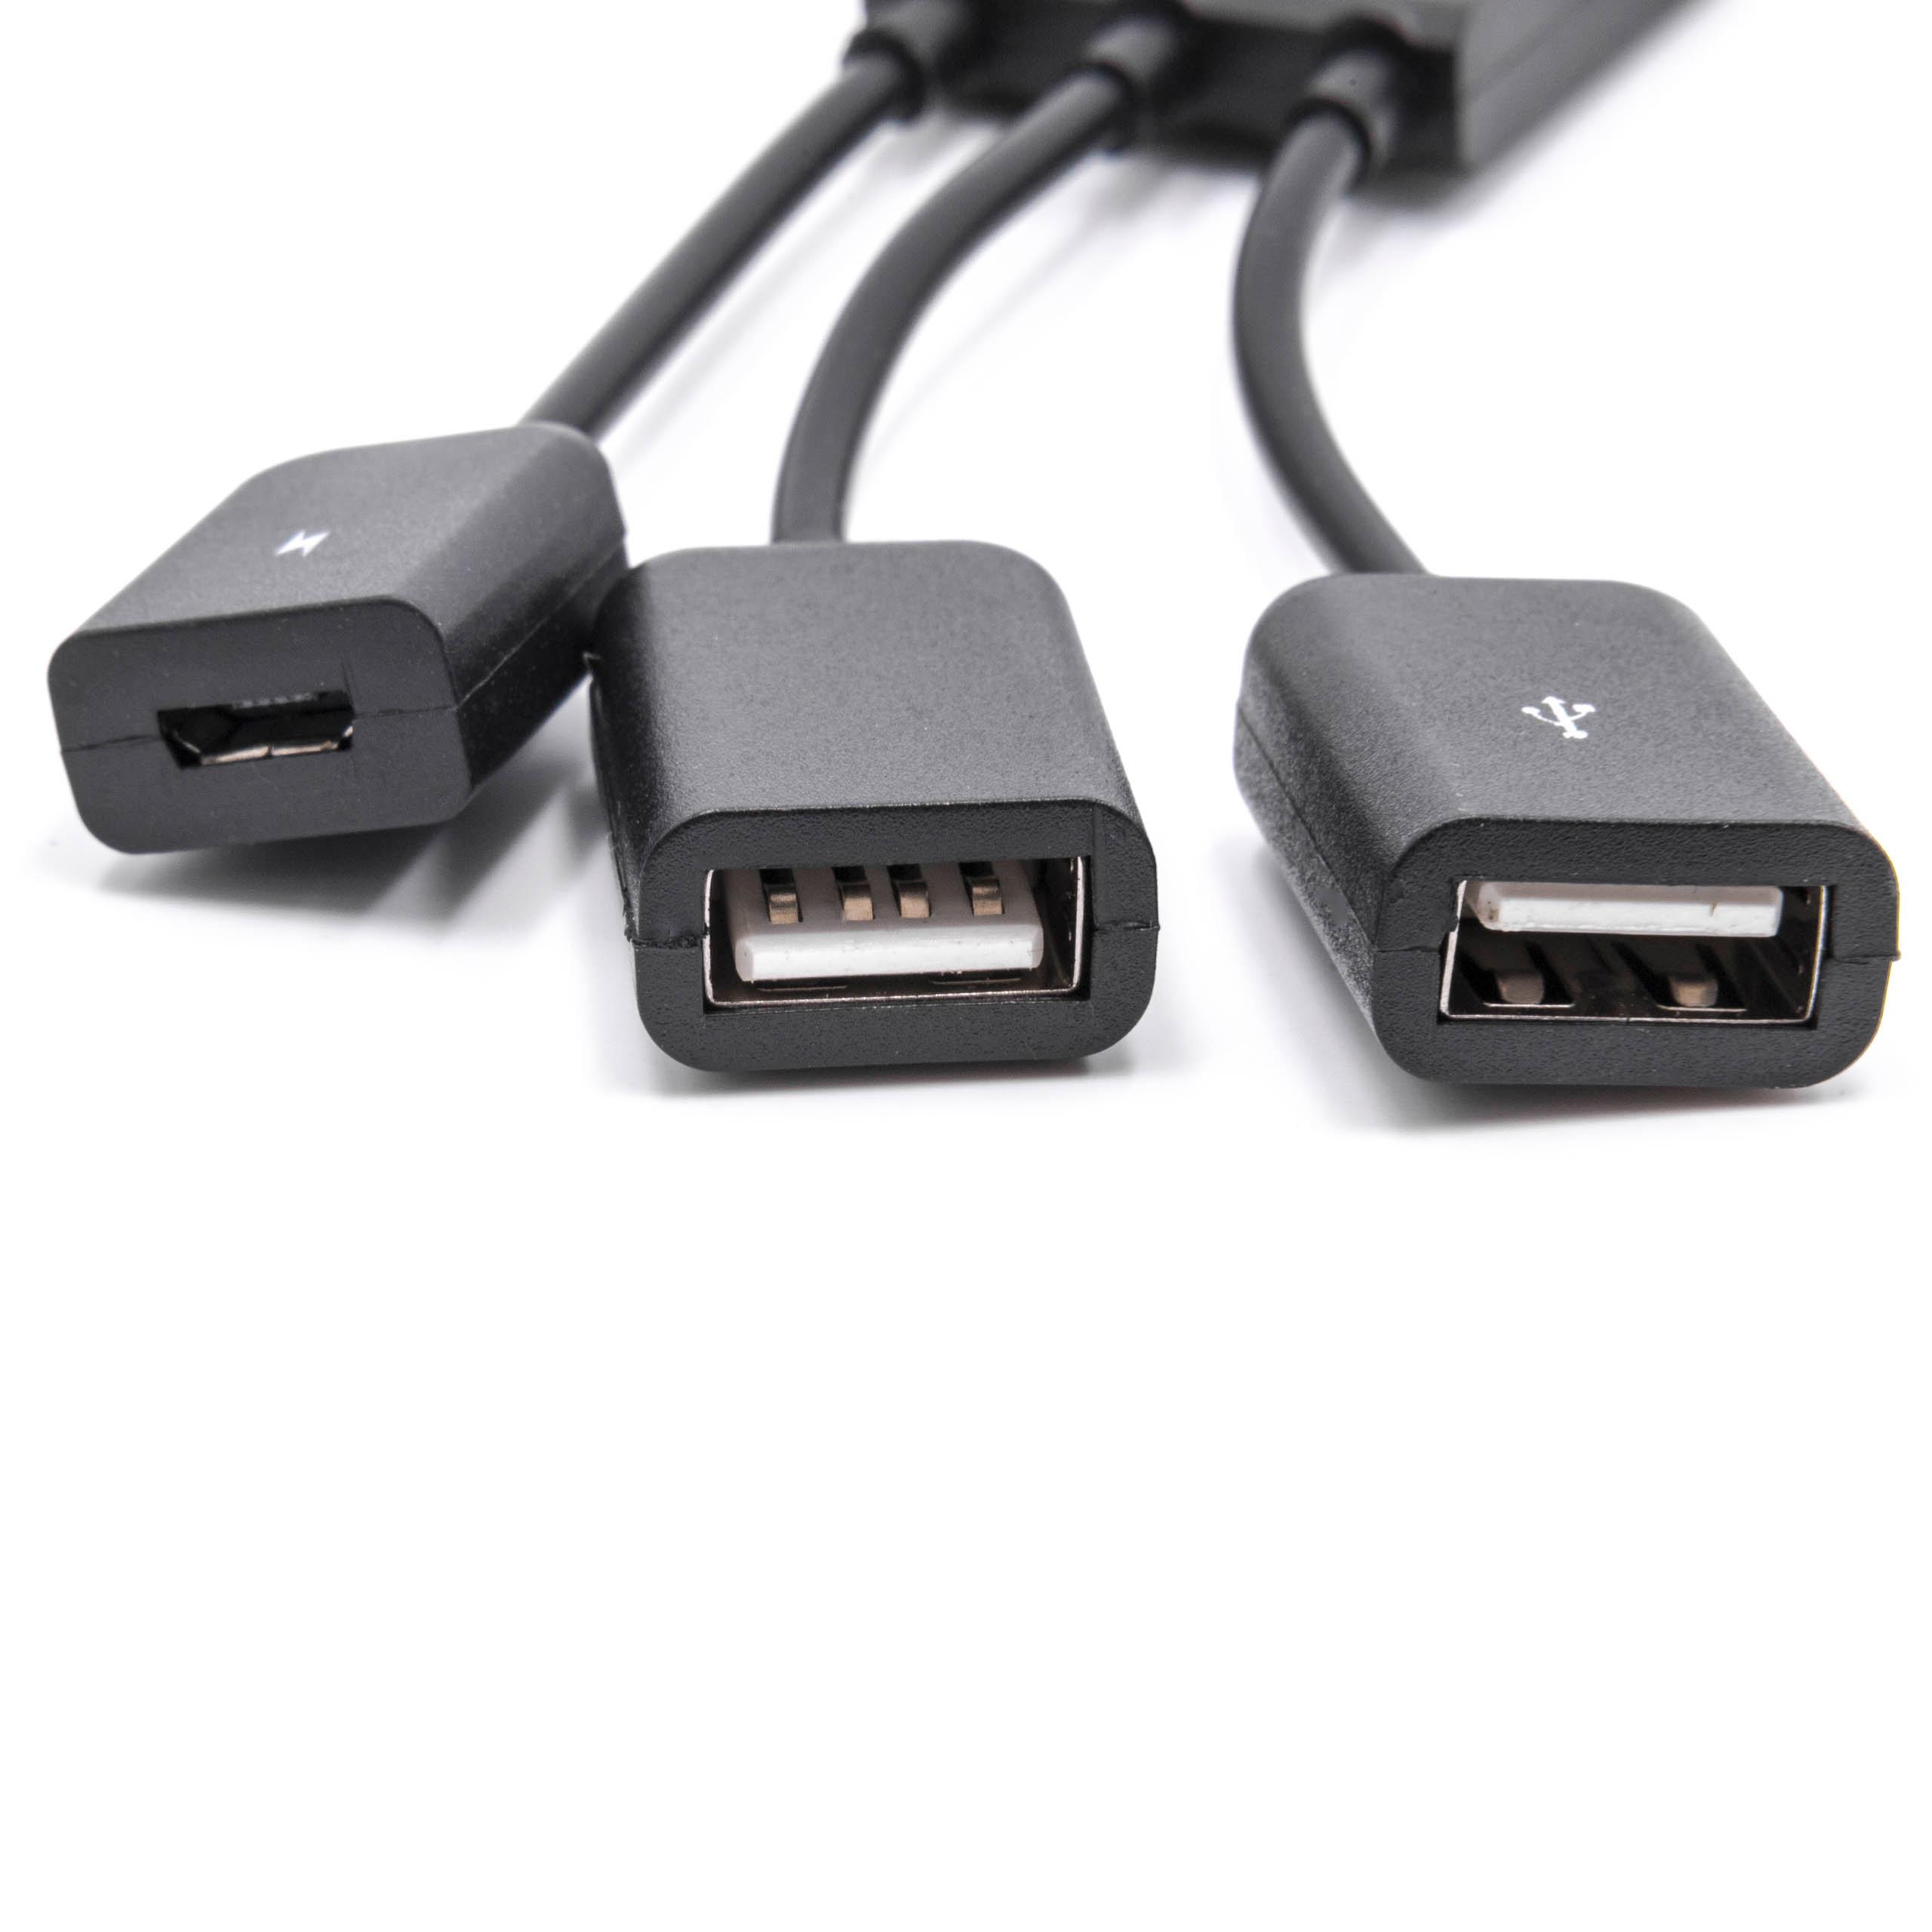 Adapteur OTG USB Type C (mâle) à Micro USB (femelle), 2x USB (femelle) pour smartphone, tablette, ordinateur p